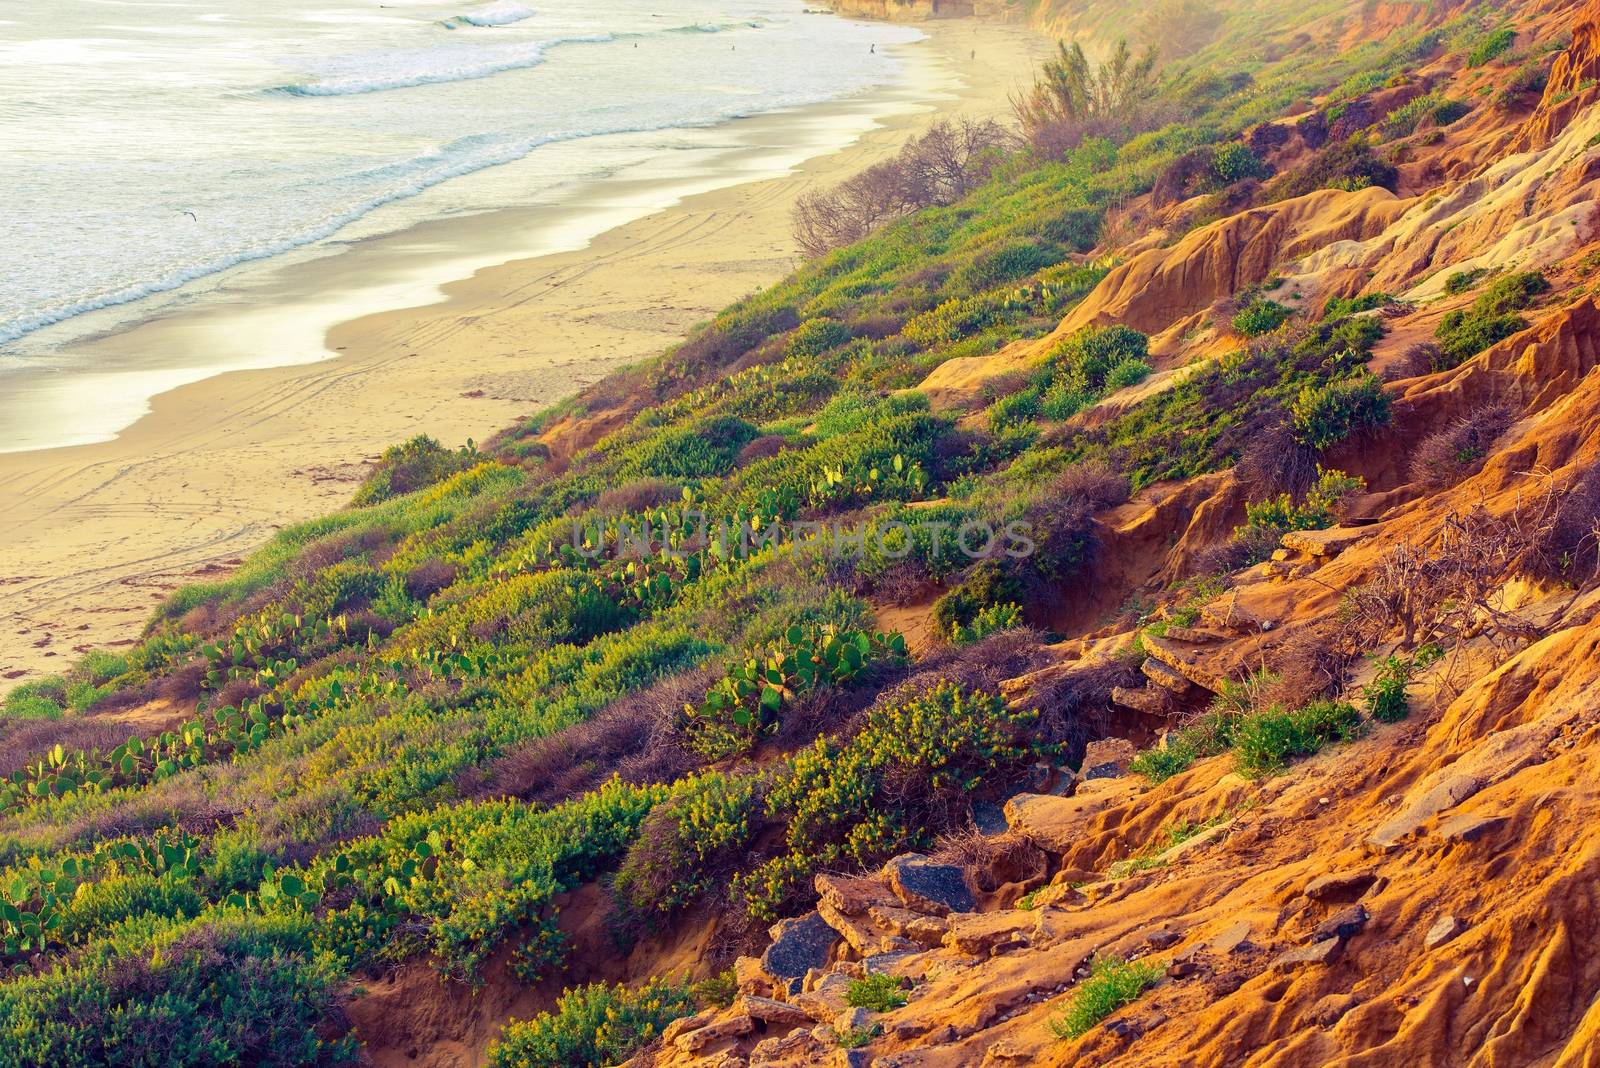 California Ocean Shore by welcomia